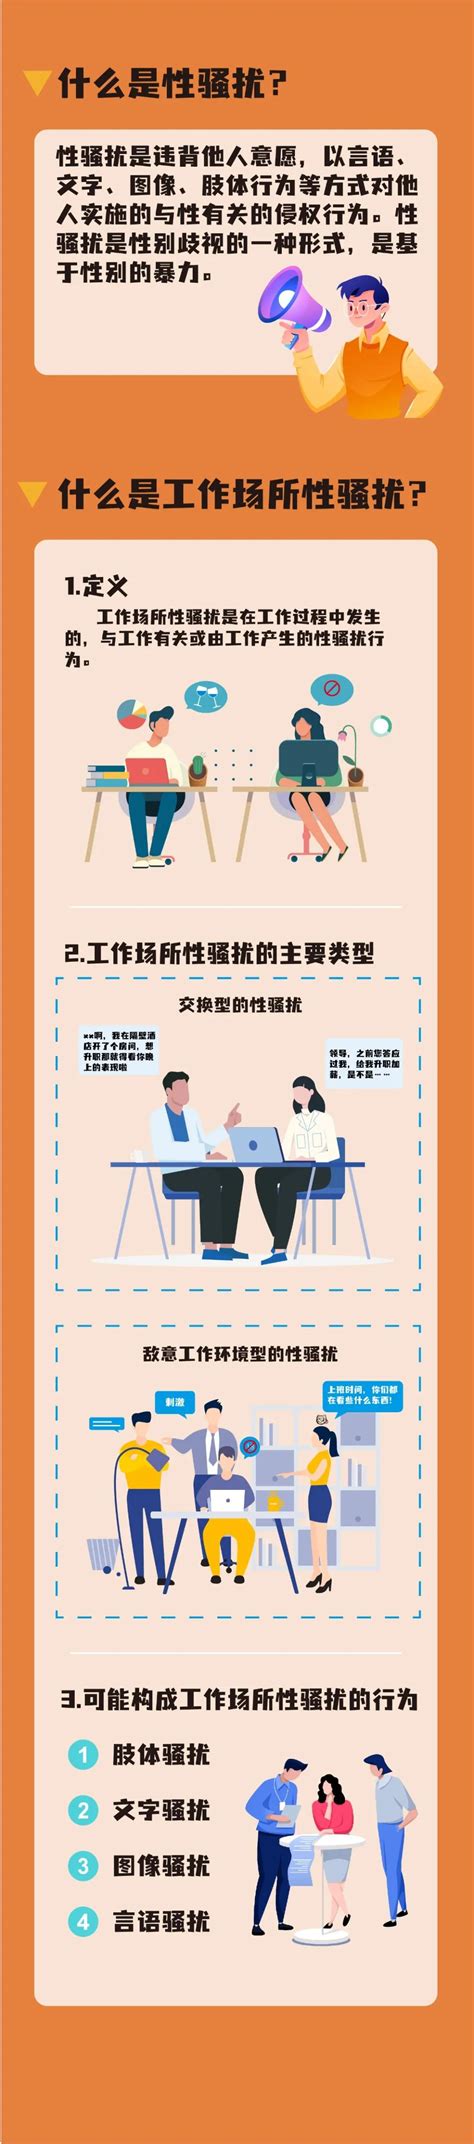 企业如何预防和制止工作场所性骚扰 - 湖南省企业和工业经济联合会